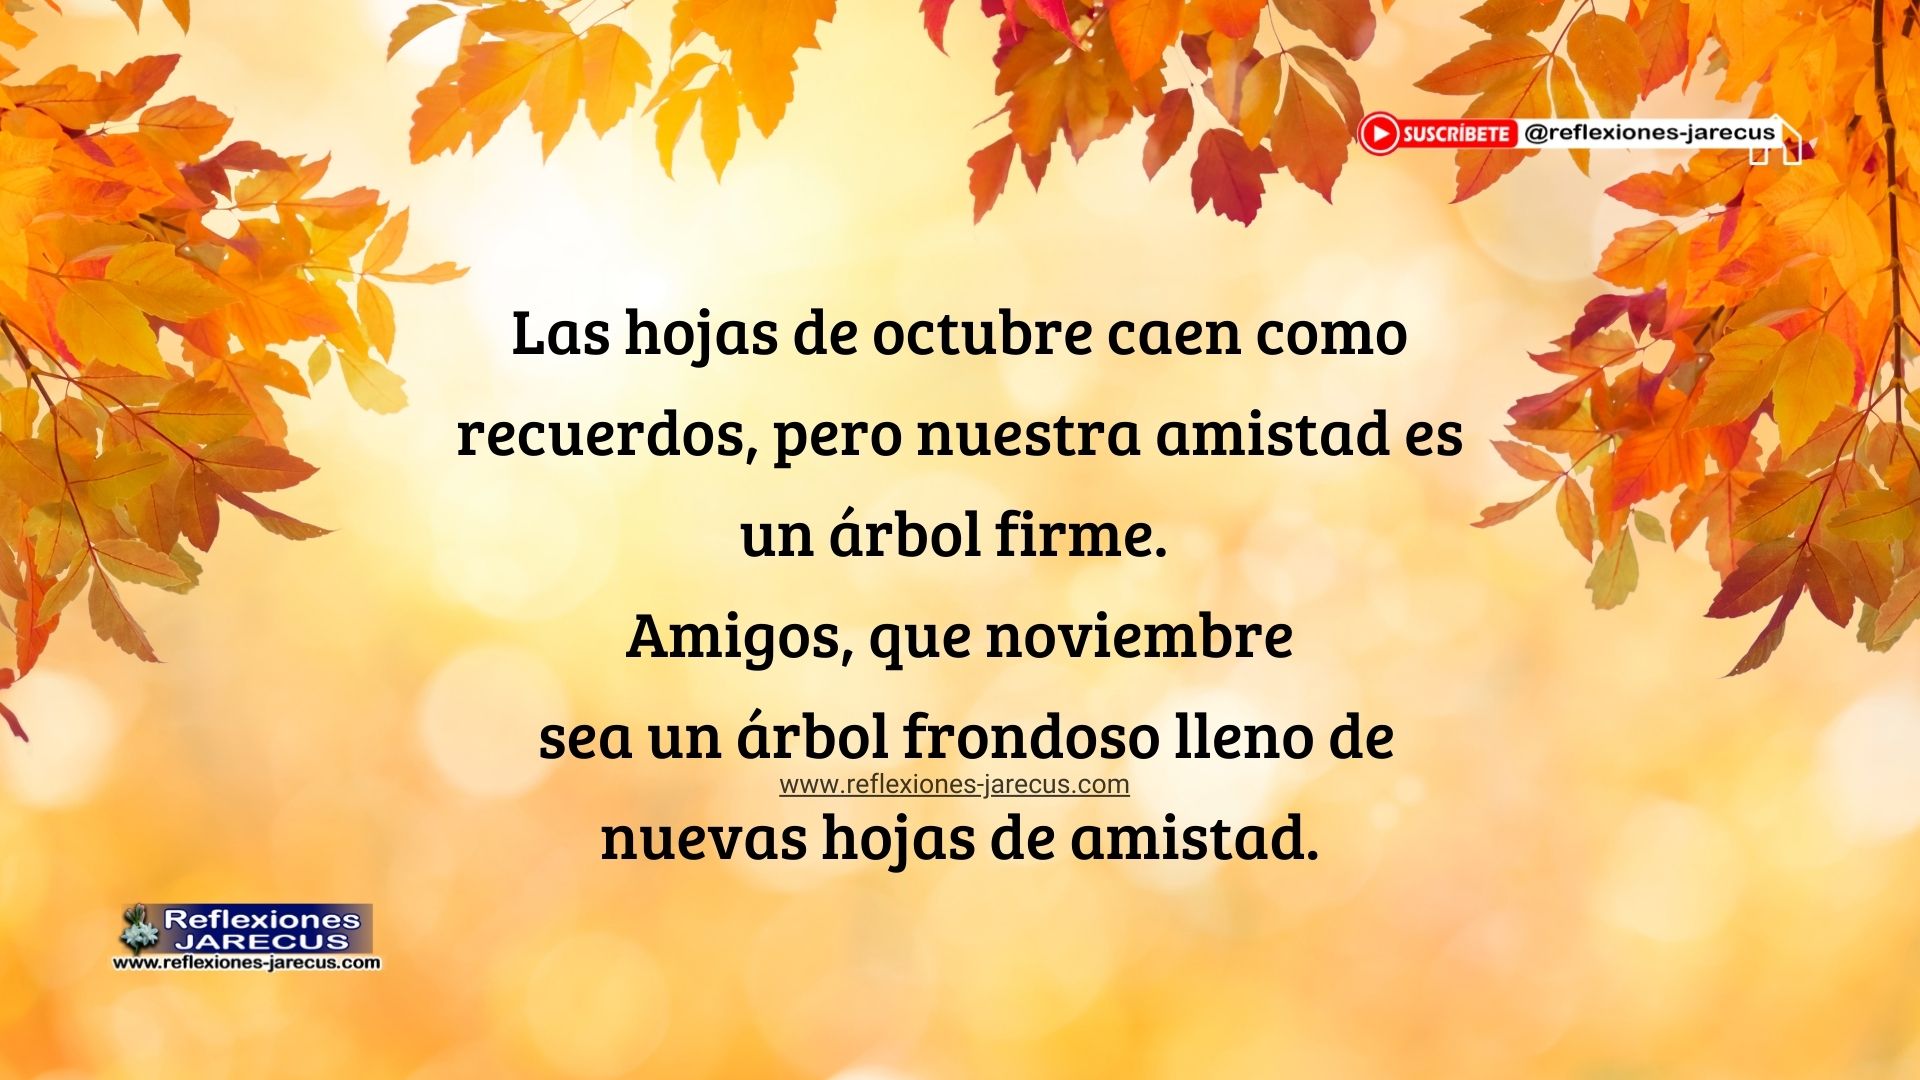 Imagen simbólica de hojas de amistad en transición de octubre a noviembre